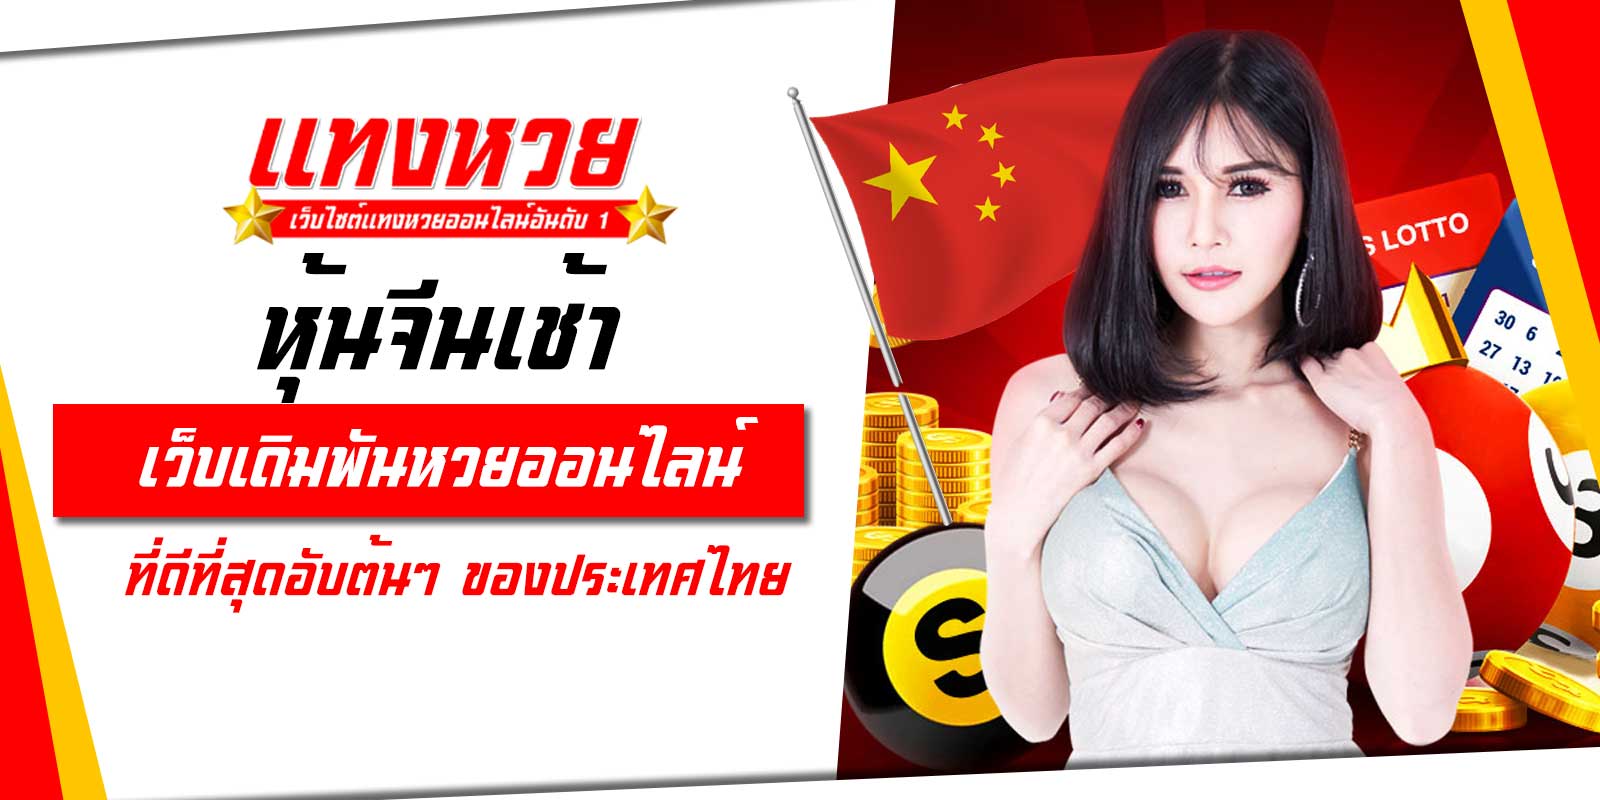 หุ้นจีนเช้า เว็บเดิมพันหวยออนไลน์ ที่ดีที่สุดอับต้นๆ ของประเทศไทย